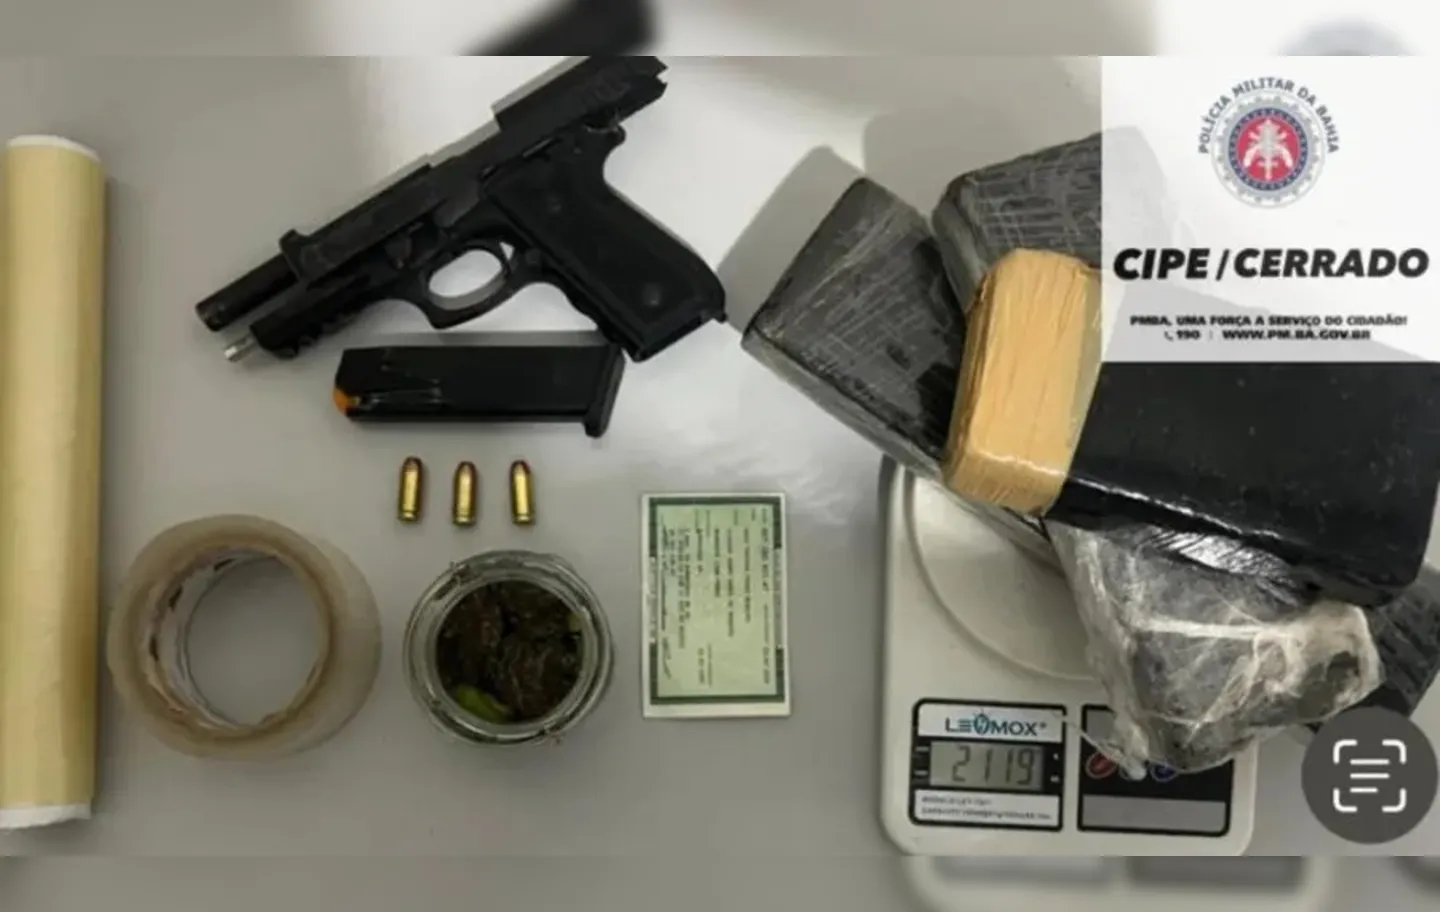 Foram apreendidos uma pistola calibre 40, três tabletes de maconha e uma balança